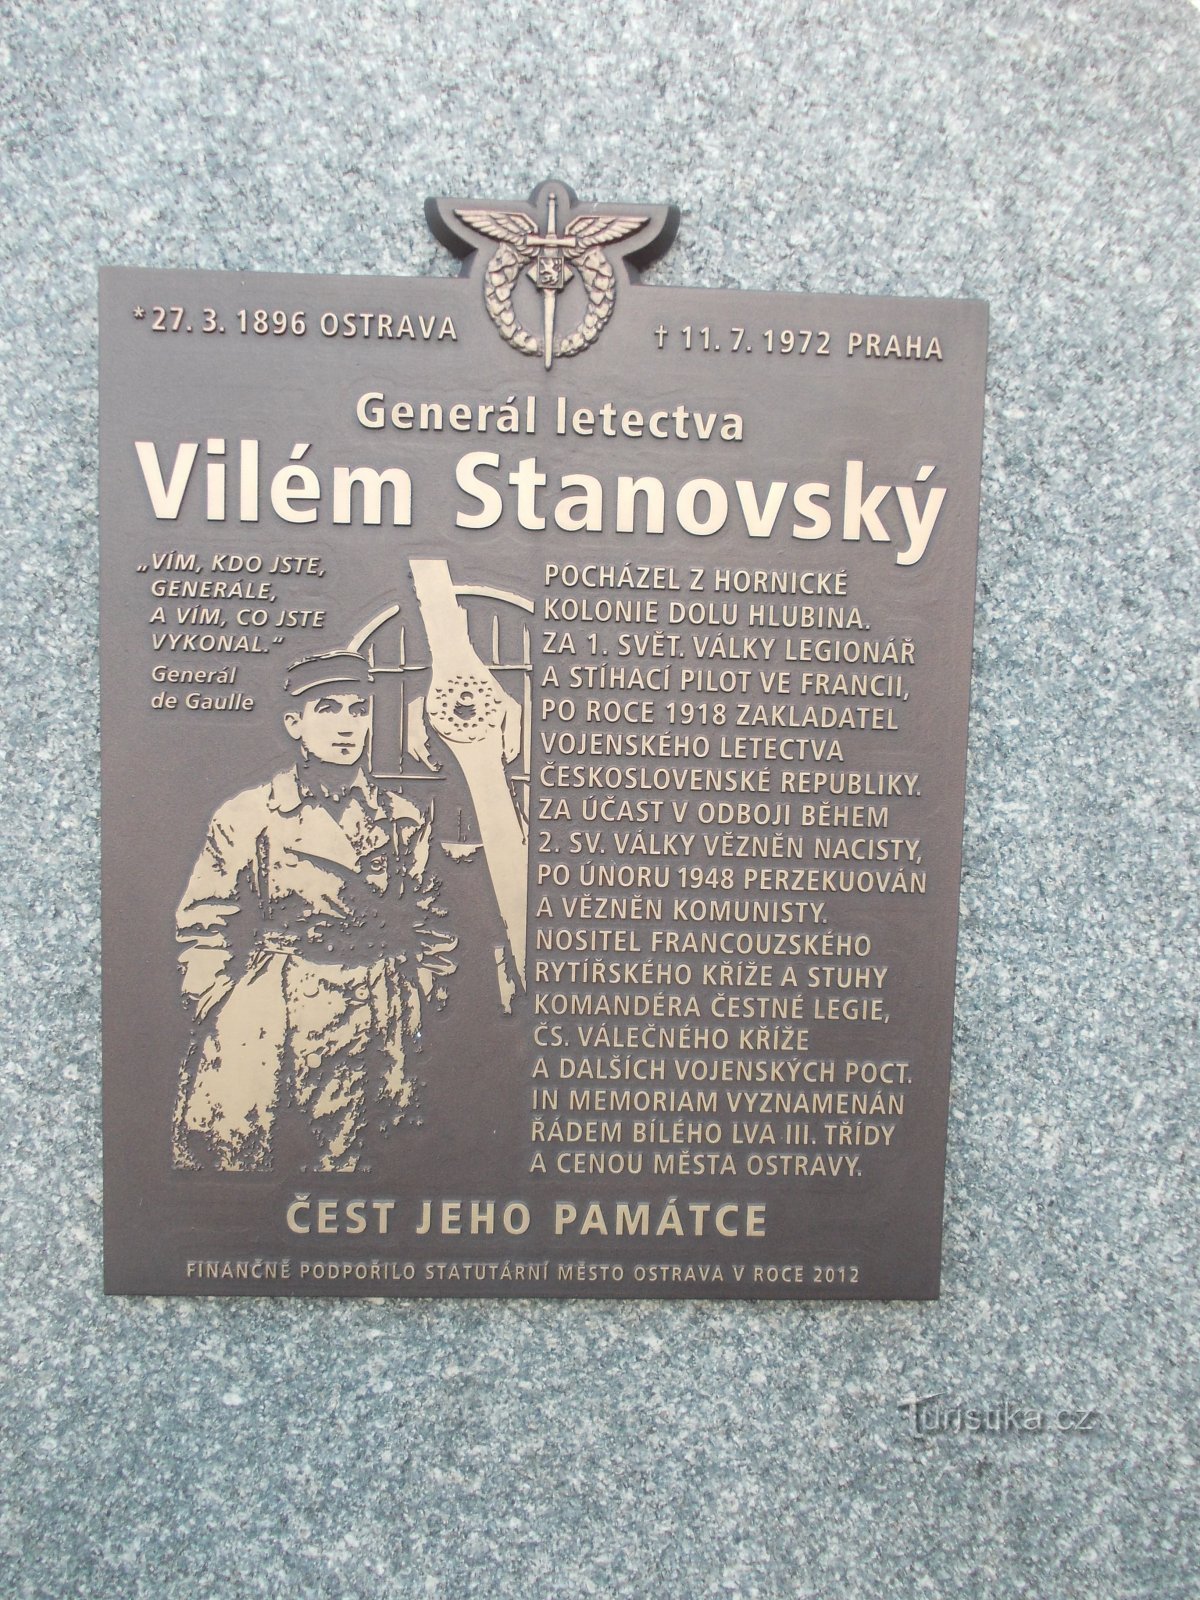 commemorative plaque